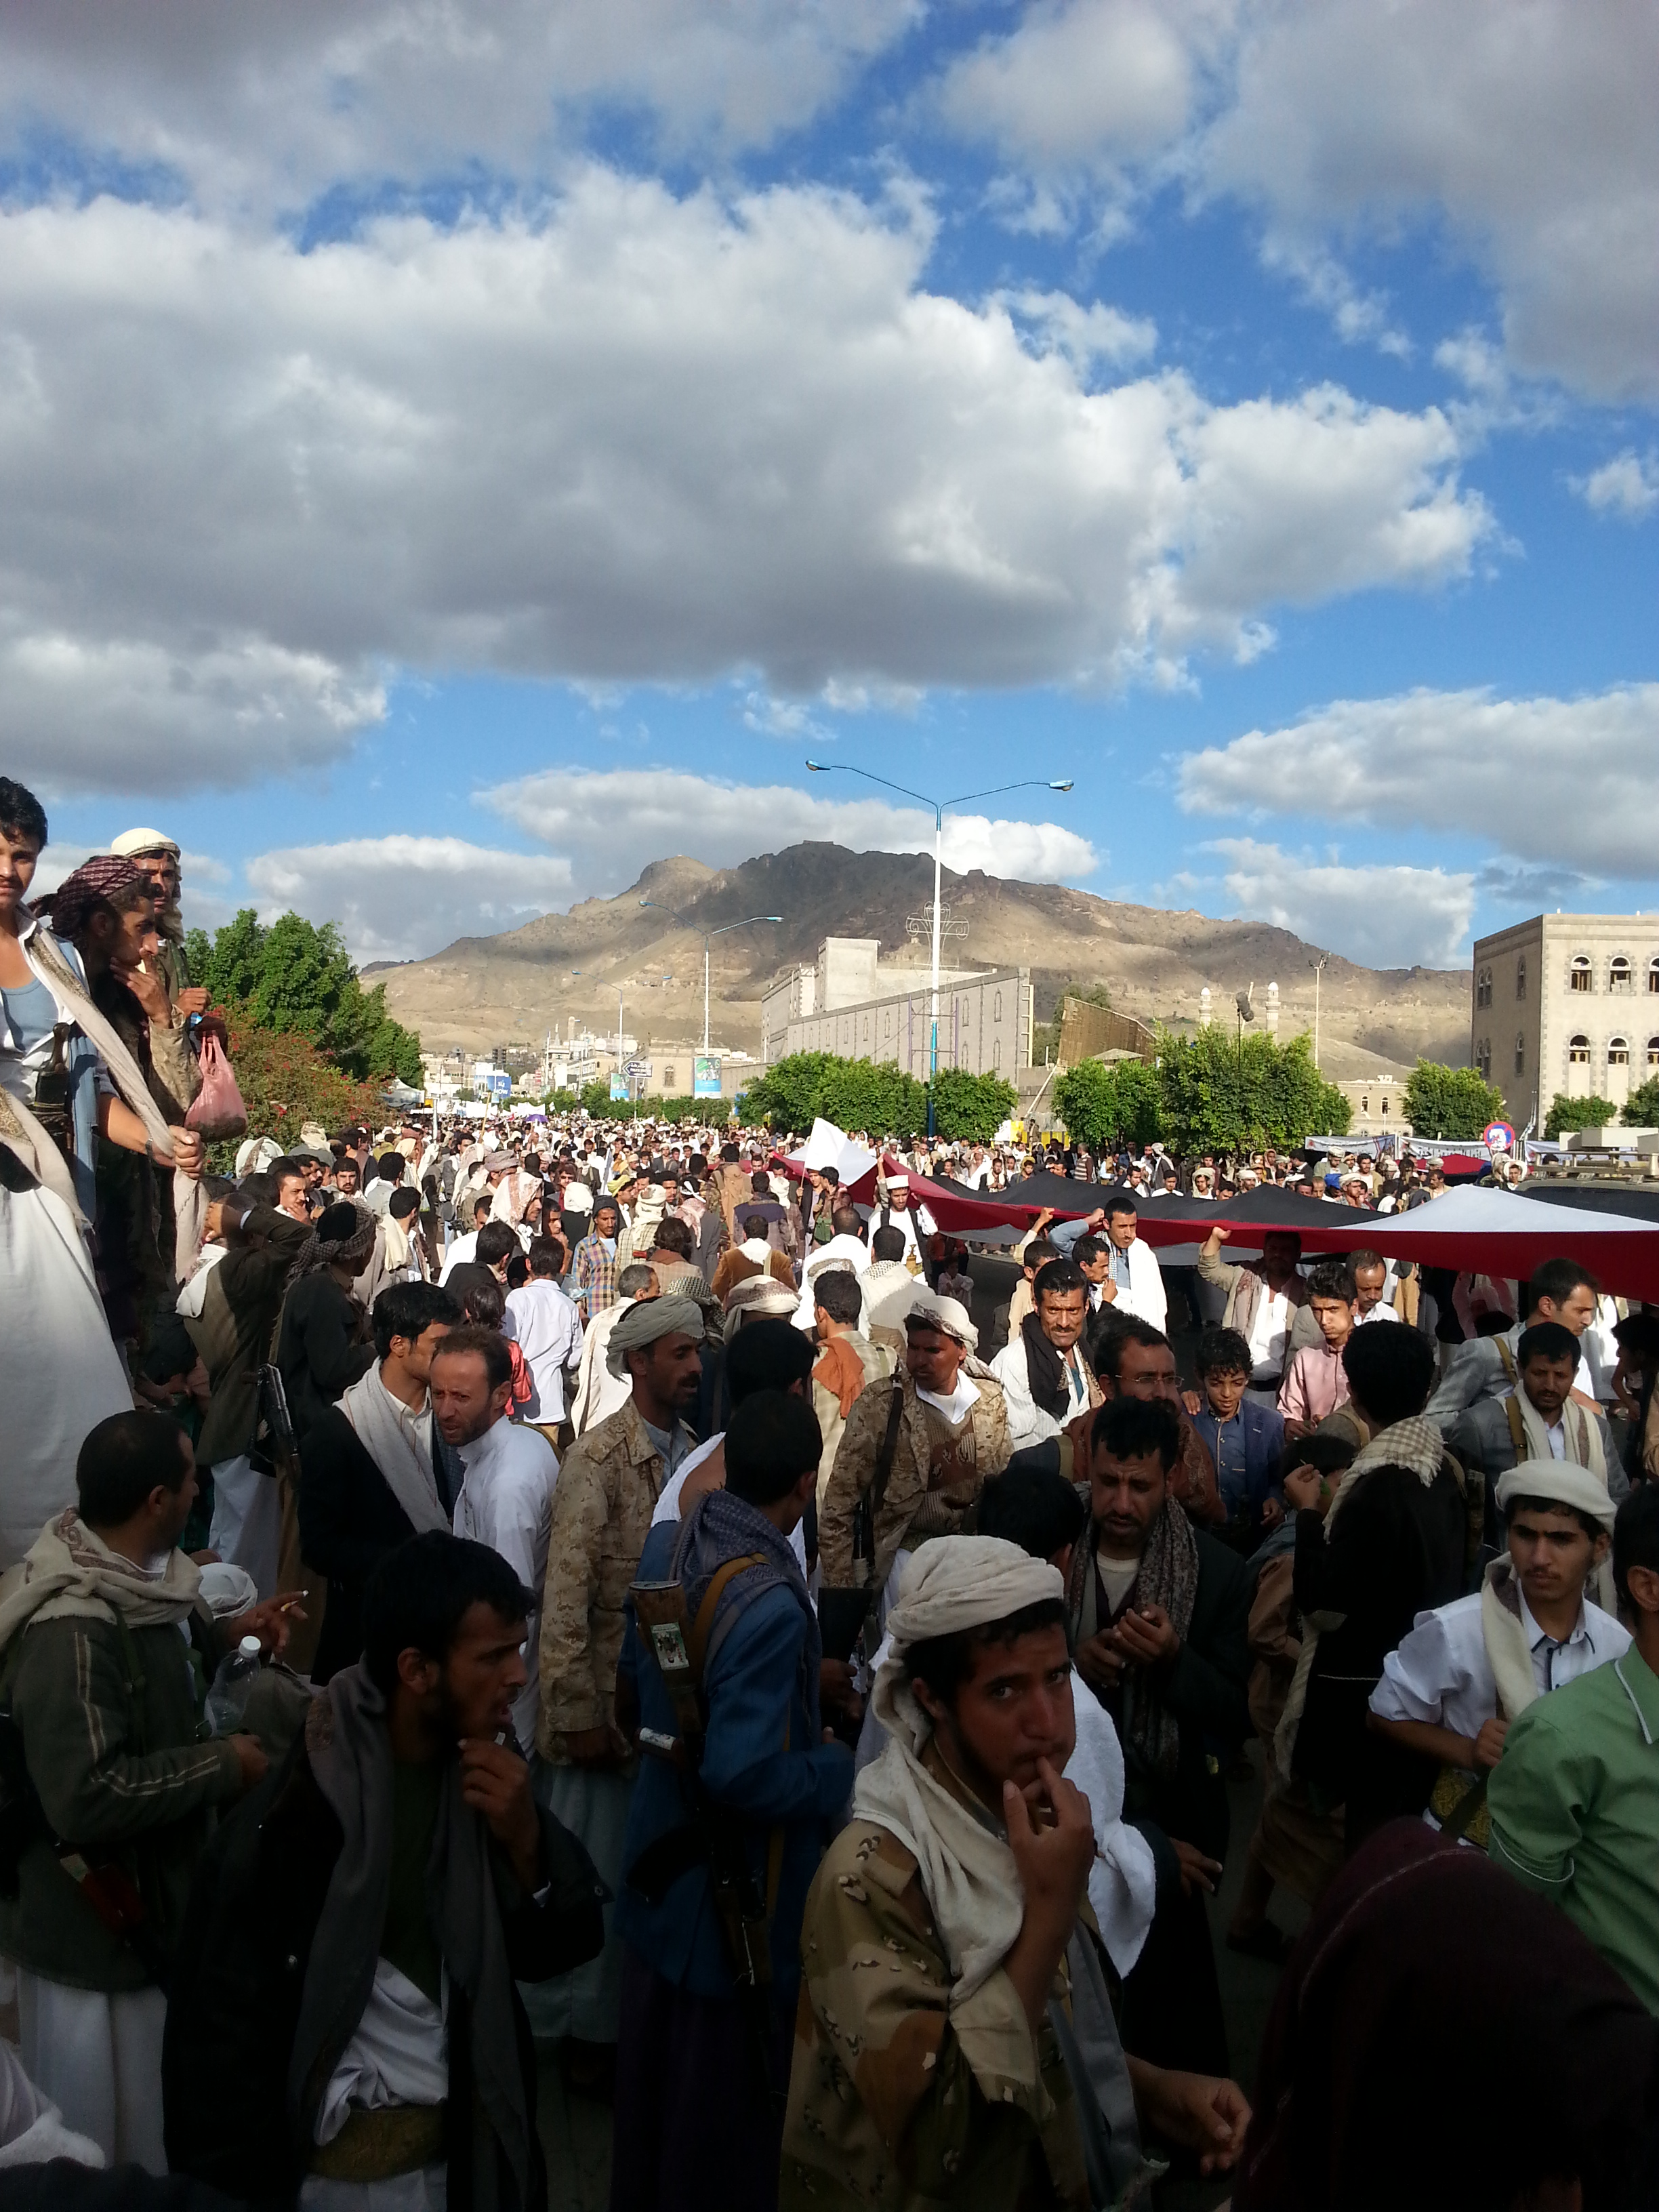 شاهد صور:لمئات الالاف احتشدت في العاصمة صنعاء رافعة نداء تلبية الحج ""لبيك اللهم لبيك لبيك لاشريك لك لبيك "